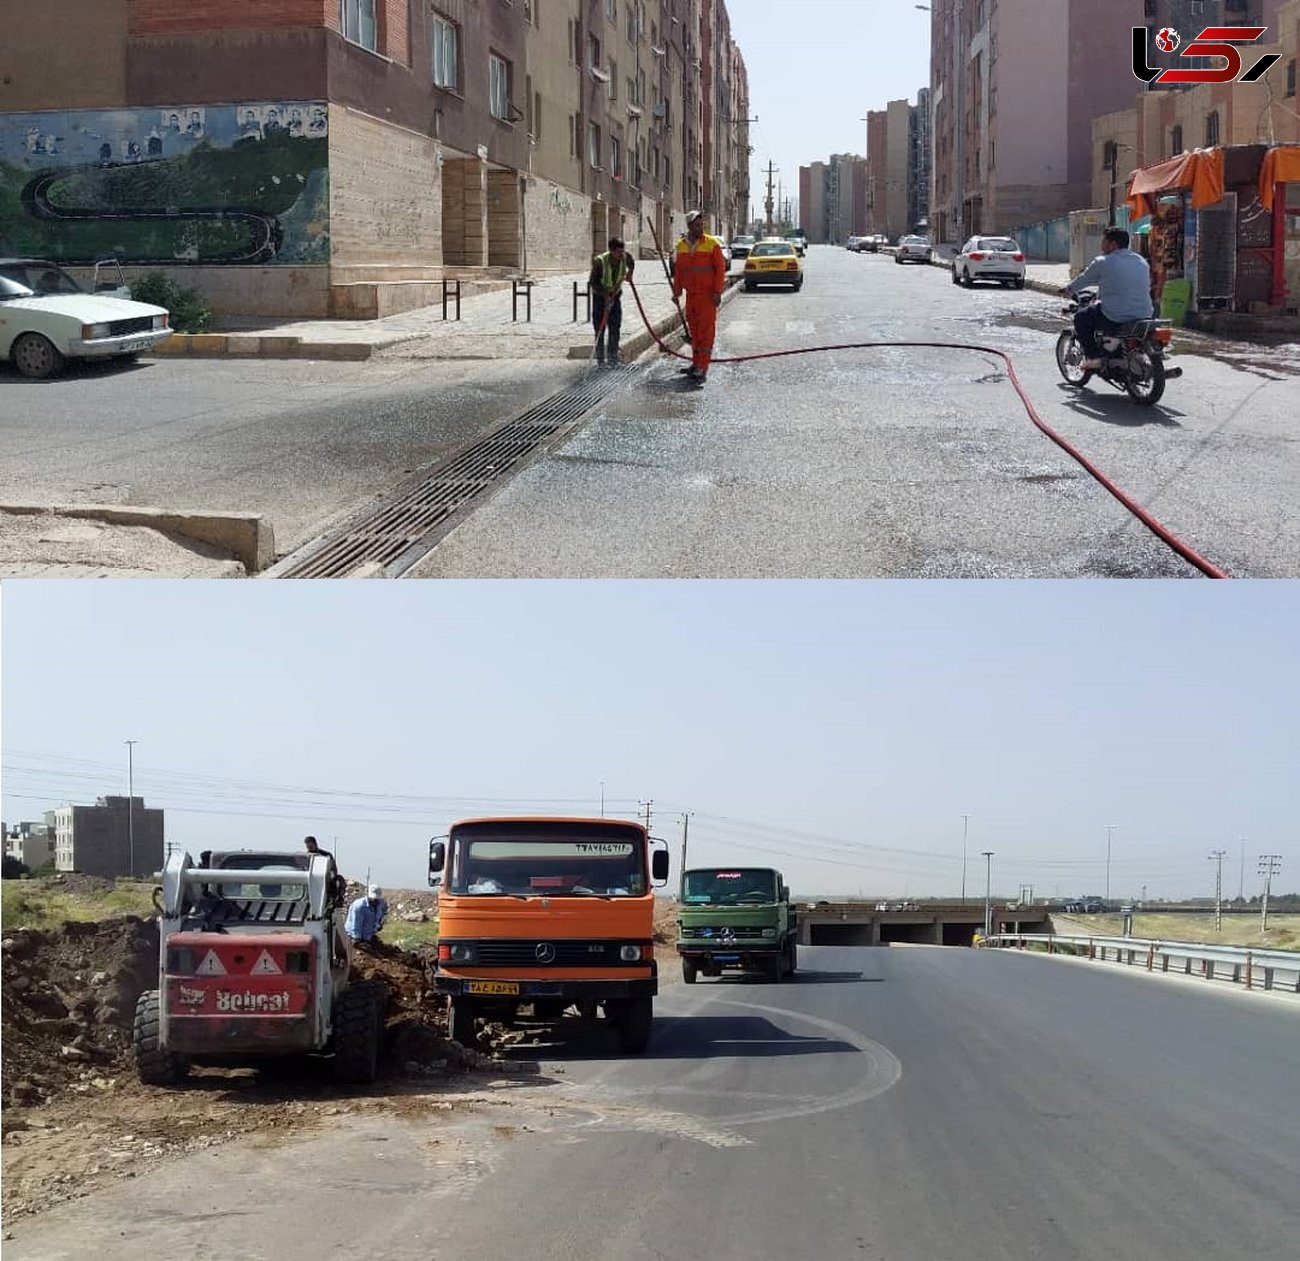 اجرای پویش مسیرسبز، ایران پاک در استان قزوین 